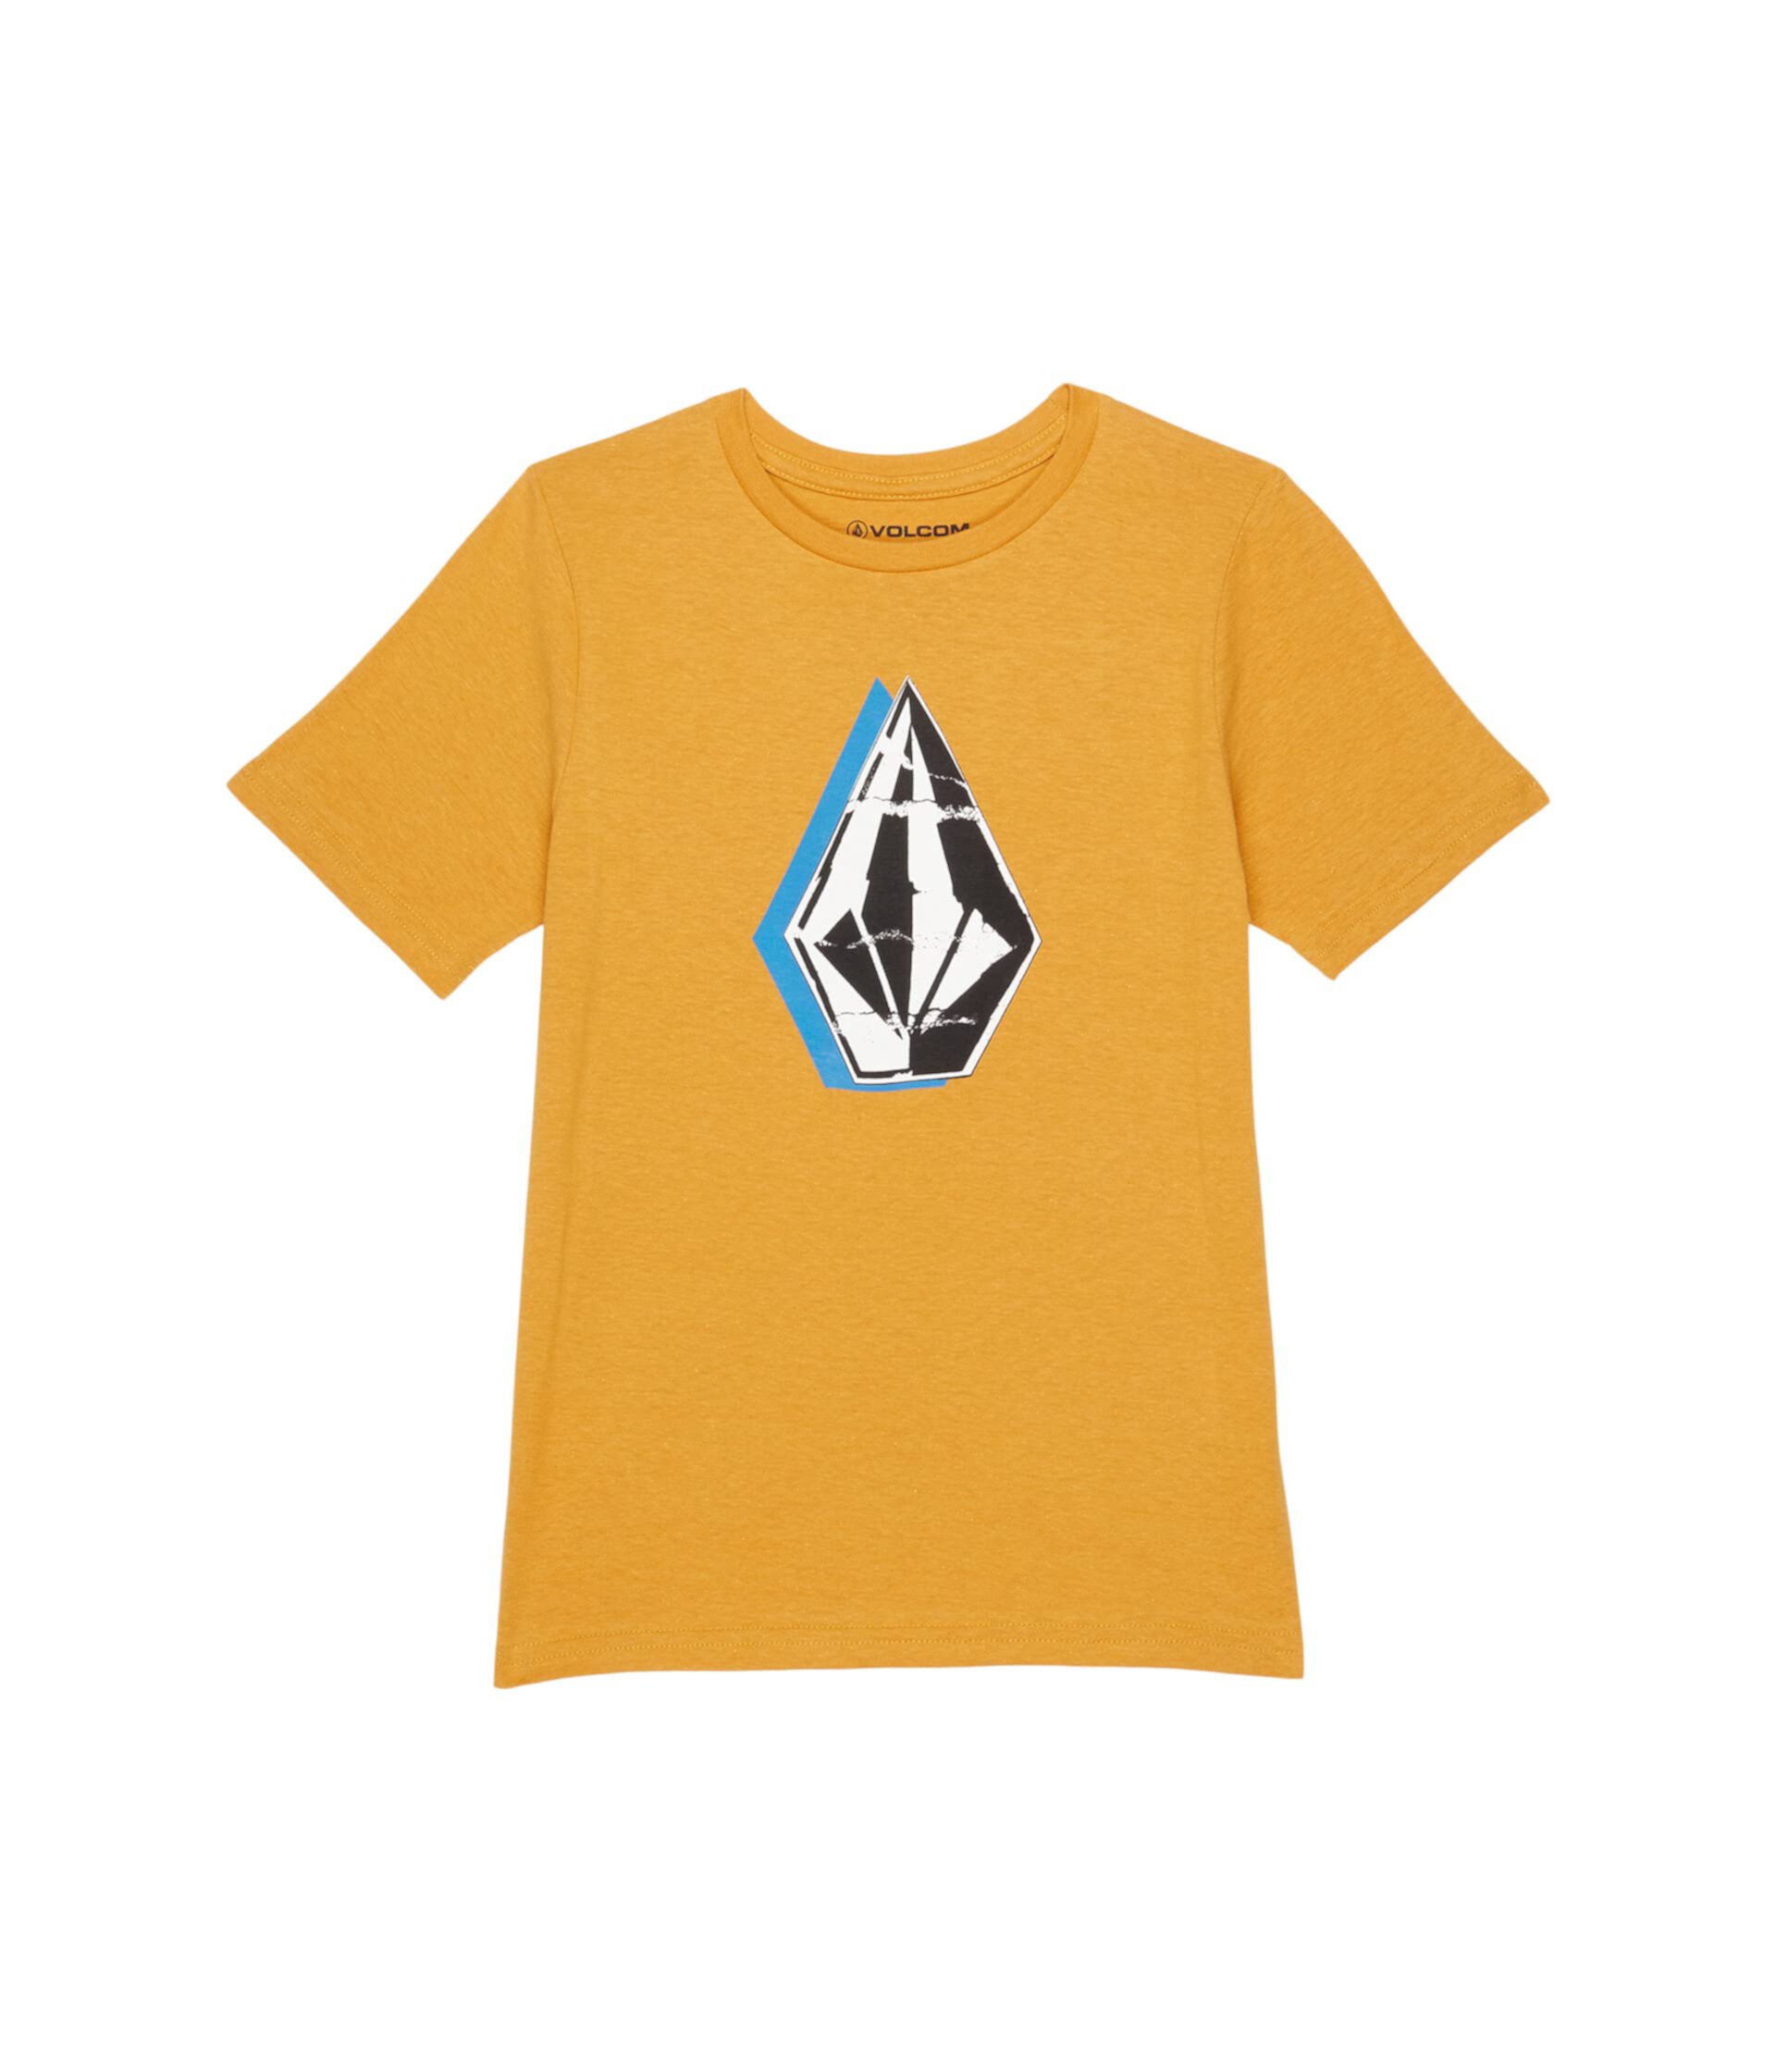 Немного зауженная футболка с коротким рукавом (для малышей/маленьких детей) Volcom Kids